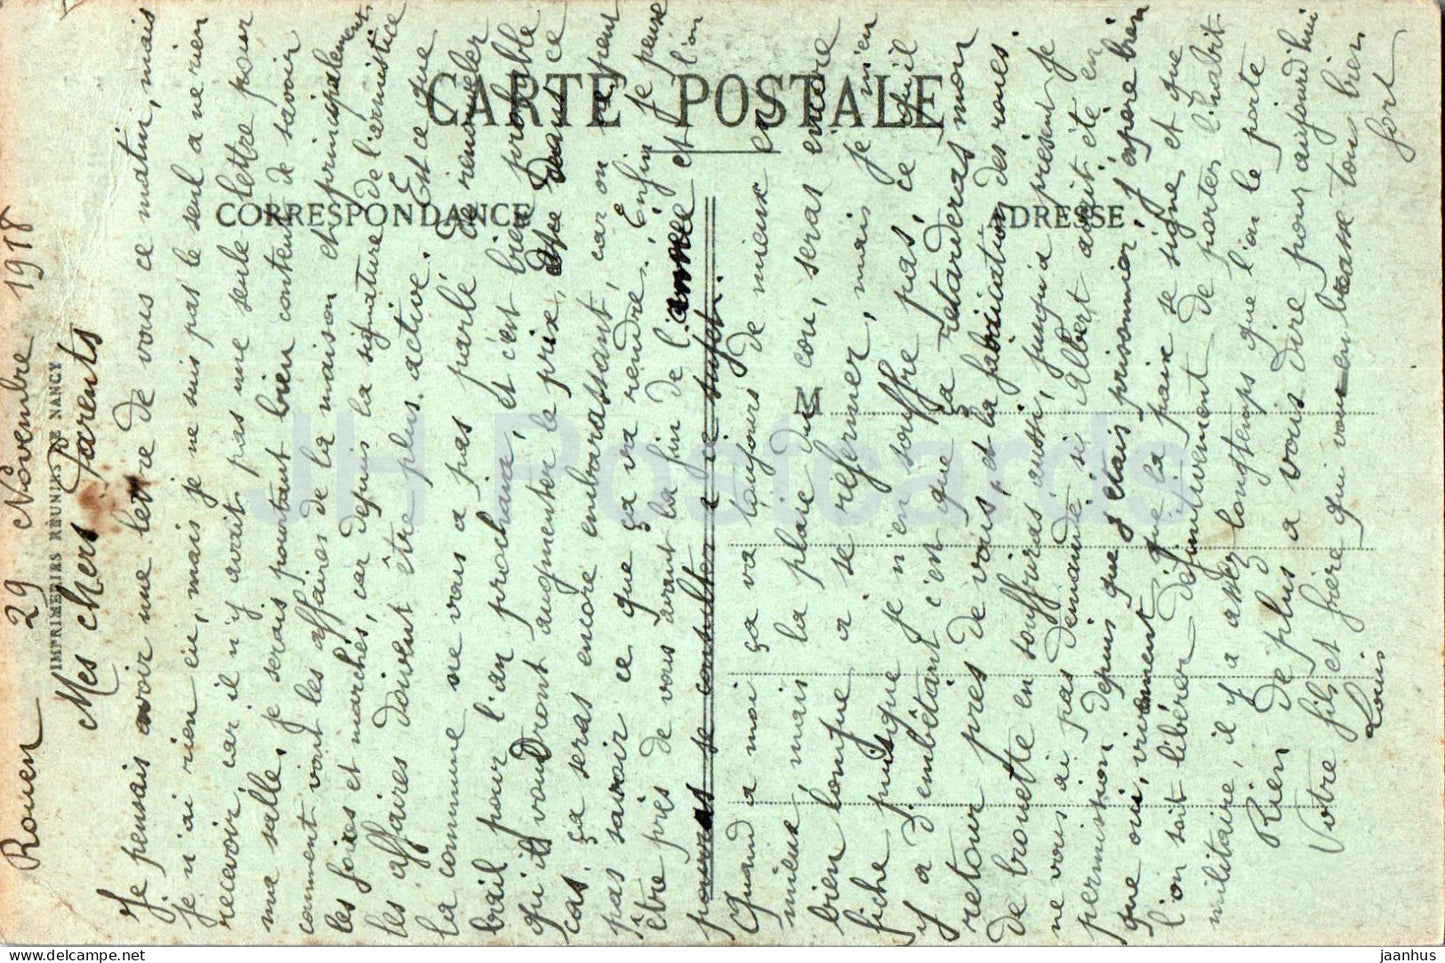 Rouen - Vue Generale - 475 - alte Postkarte - 1918 - Frankreich - gebraucht 